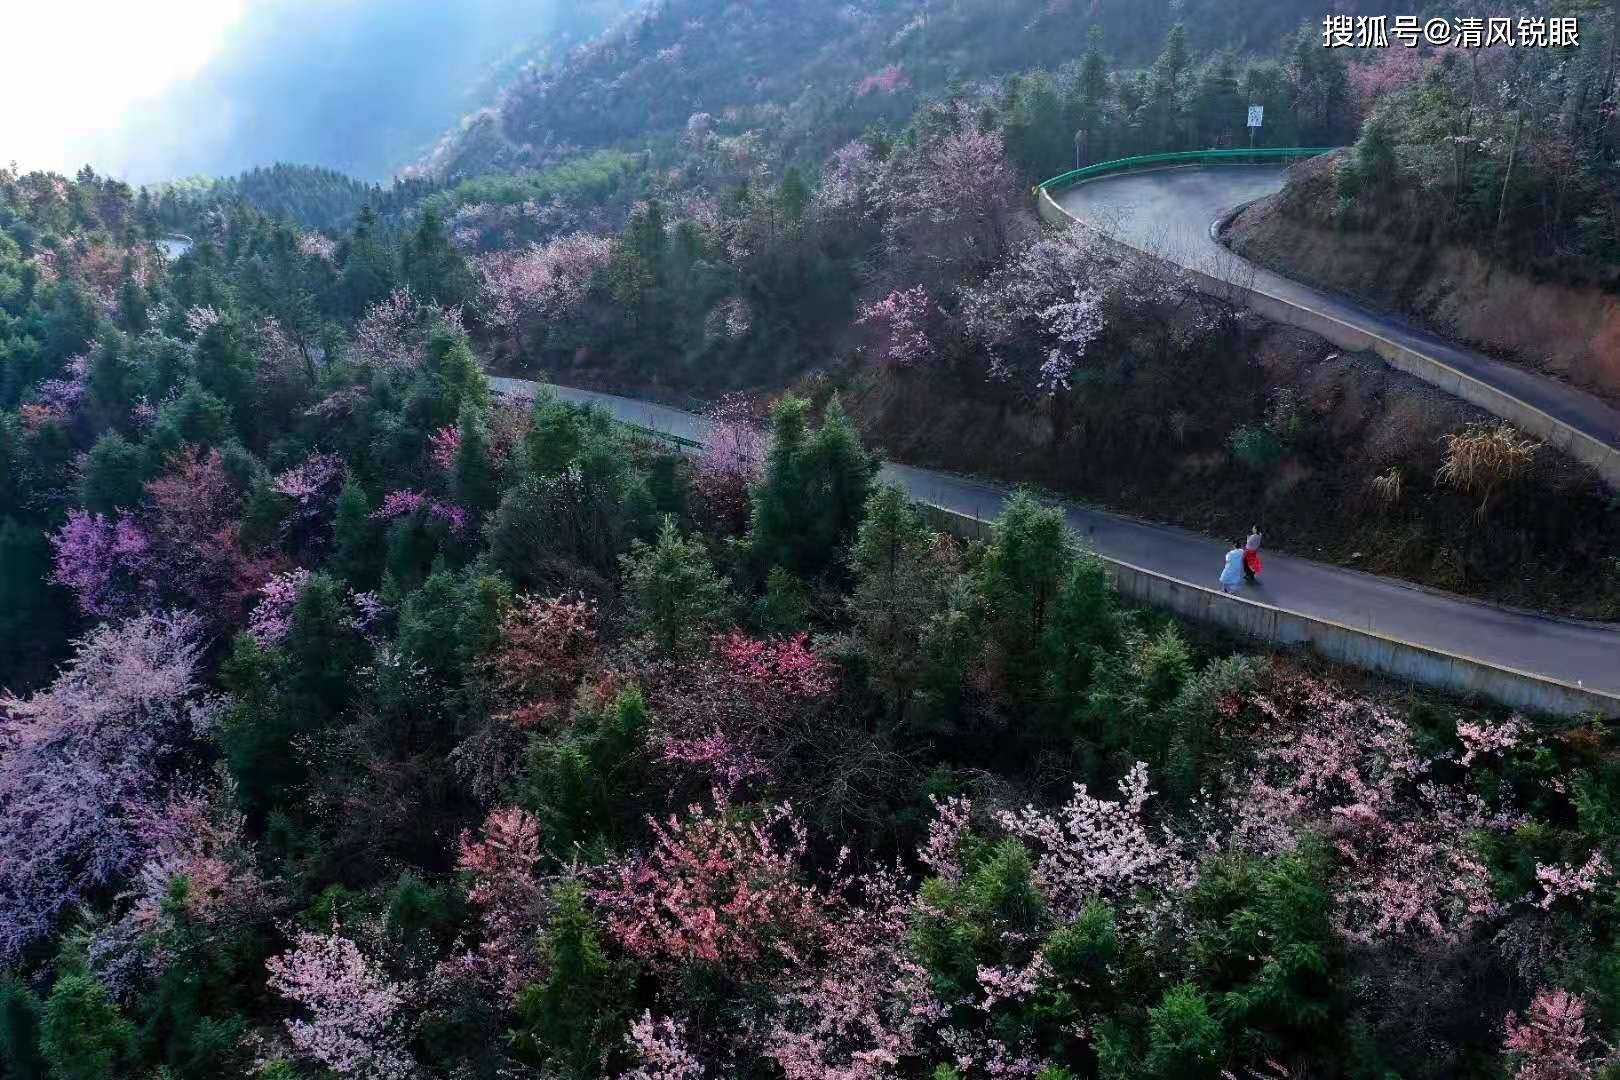 崇阳举办第二届樱花节 打造全域文化旅游新名片